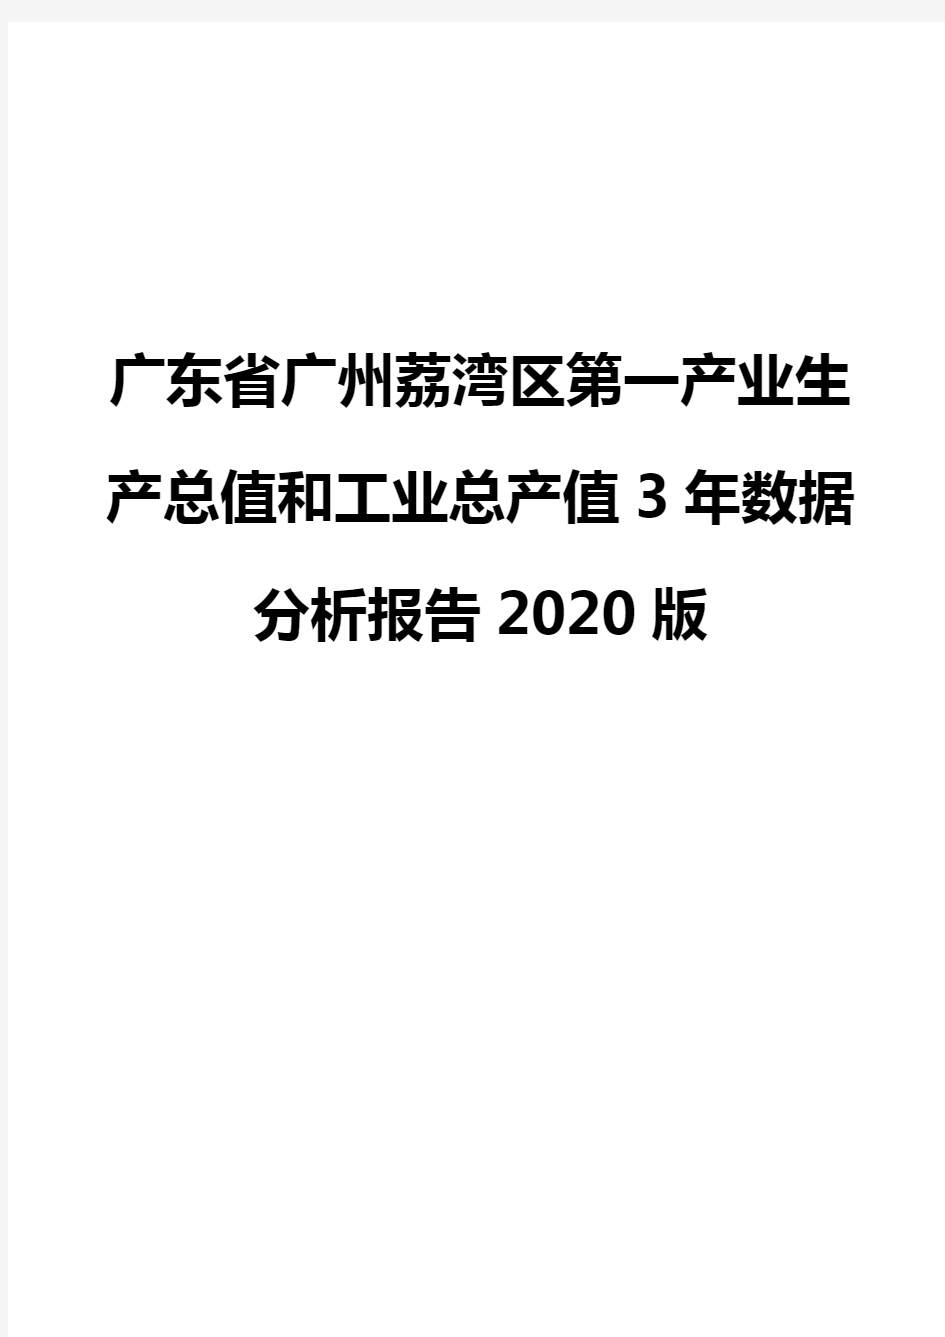 广东省广州荔湾区第一产业生产总值和工业总产值3年数据分析报告2020版